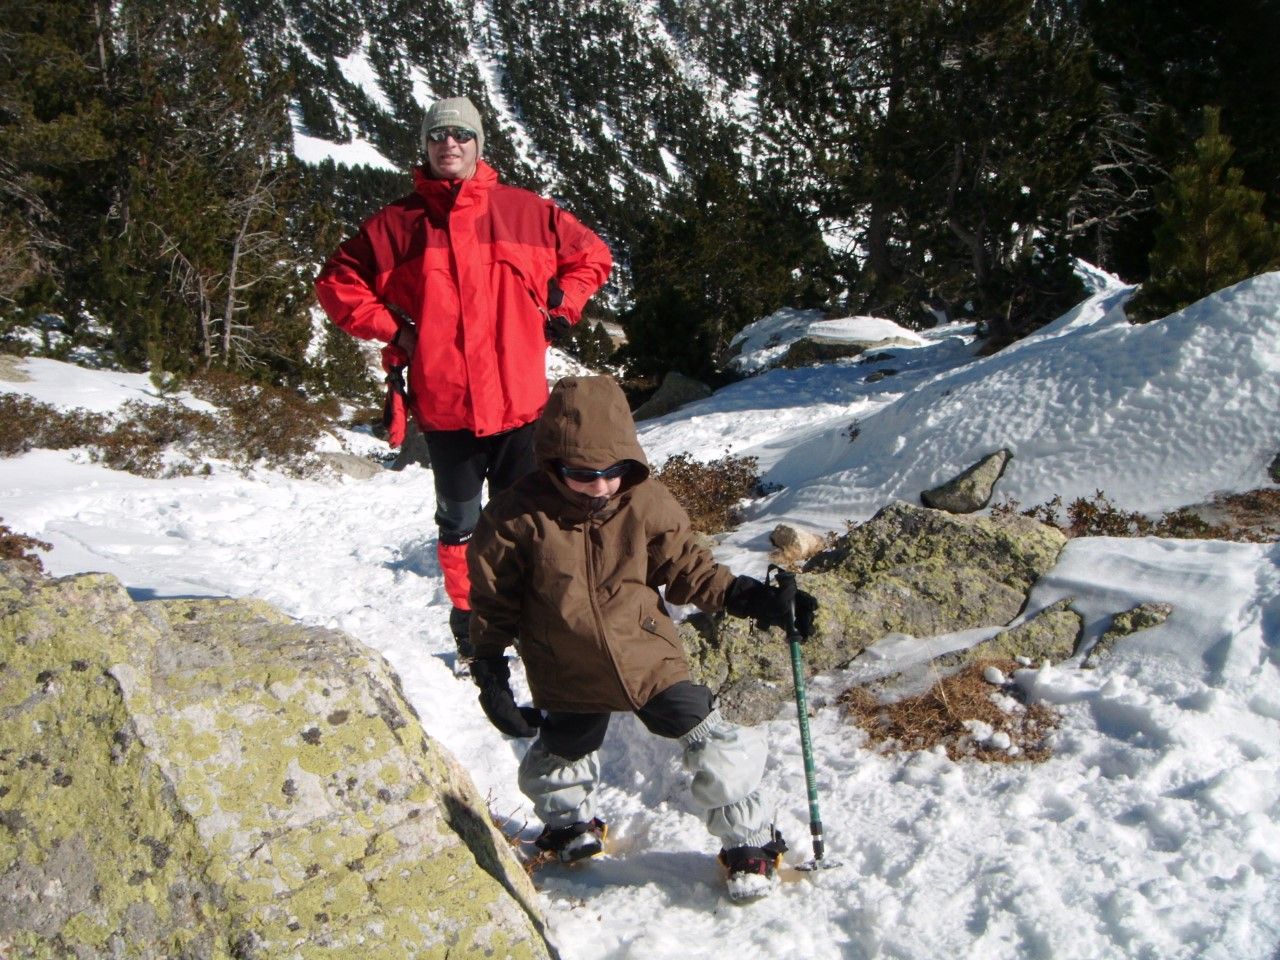 Amb el seu pare, aprenent els rudiments de caminar per muntanyes nevades, en edat en què tot just s’aprèn a caminar.